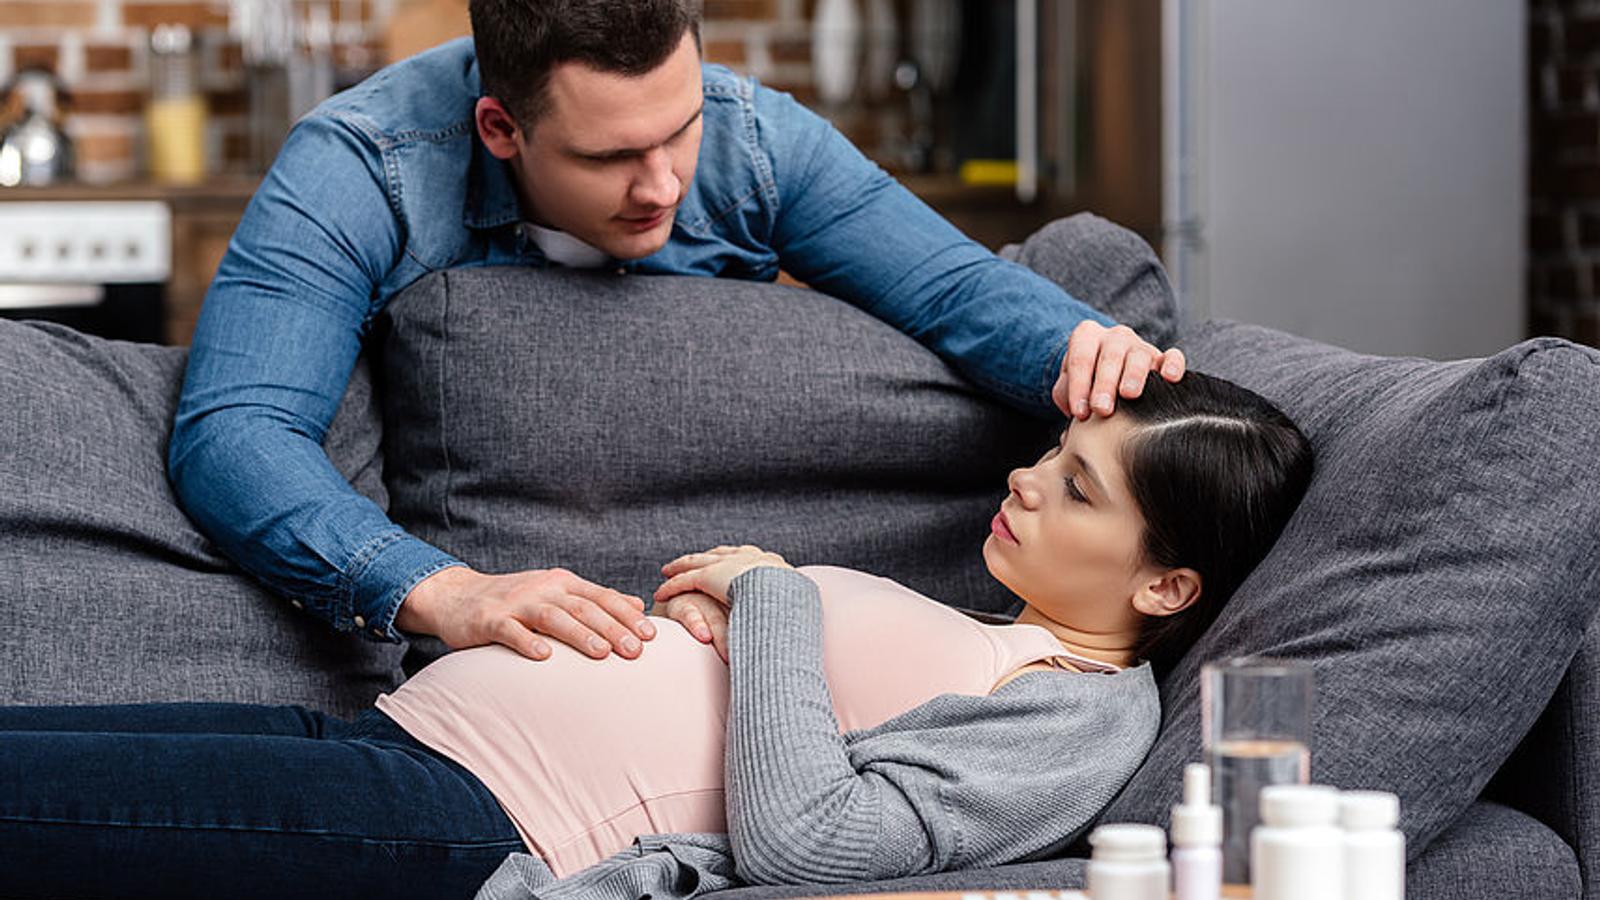 Mann kümmert sich um seine schwangere Frau, die erkältet ist